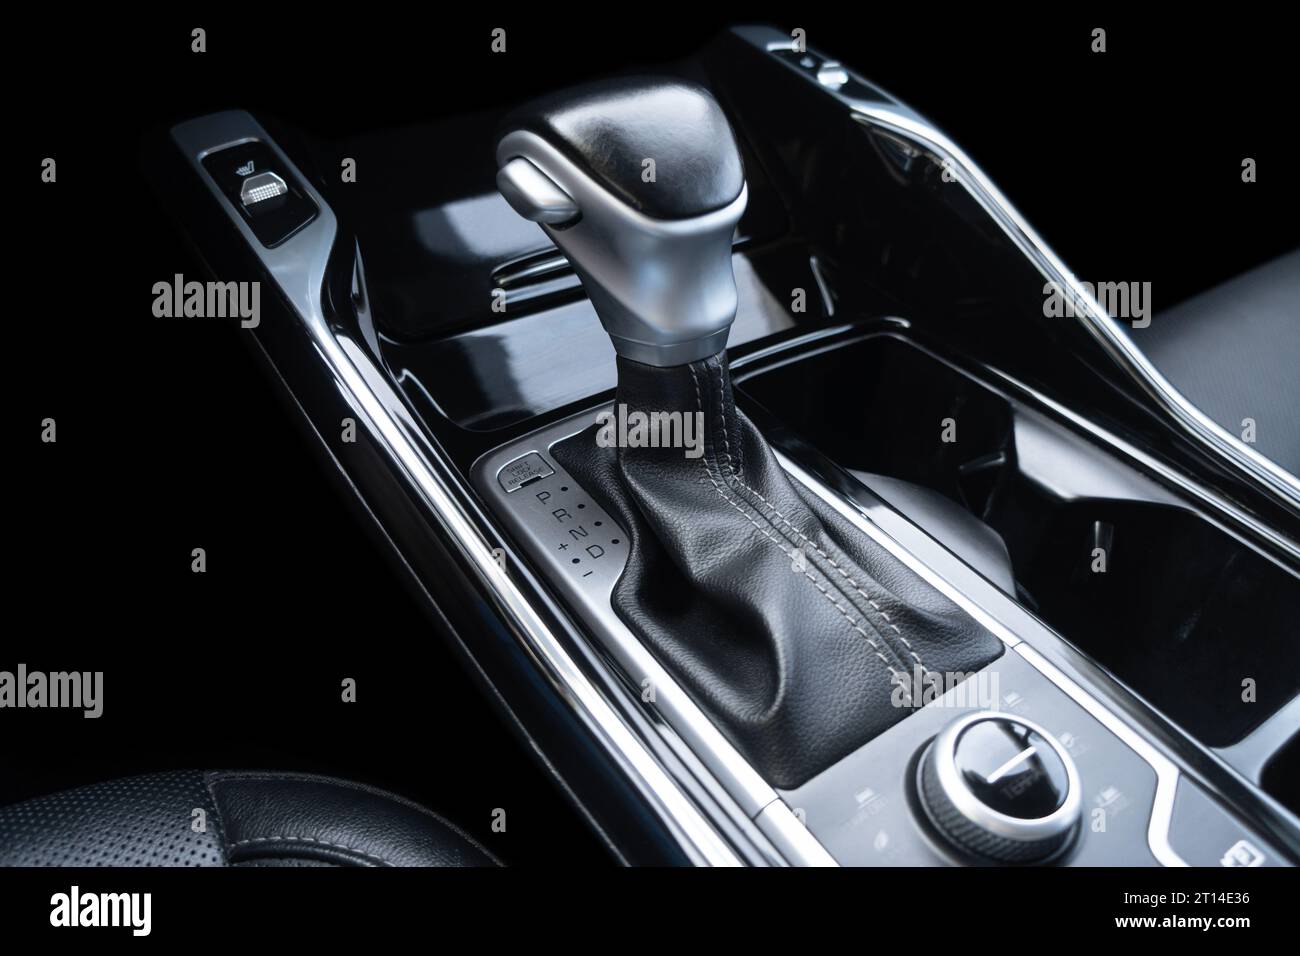 https://c8.alamy.com/compes/2t14e36/palanca-de-cambios-automatica-de-un-coche-moderno-detalles-modernos-del-interior-del-coche-vista-de-primer-plano-coche-en-el-interior-palanca-de-cambios-de-la-transmision-automatica-cuero-blanco-interi-2t14e36.jpg